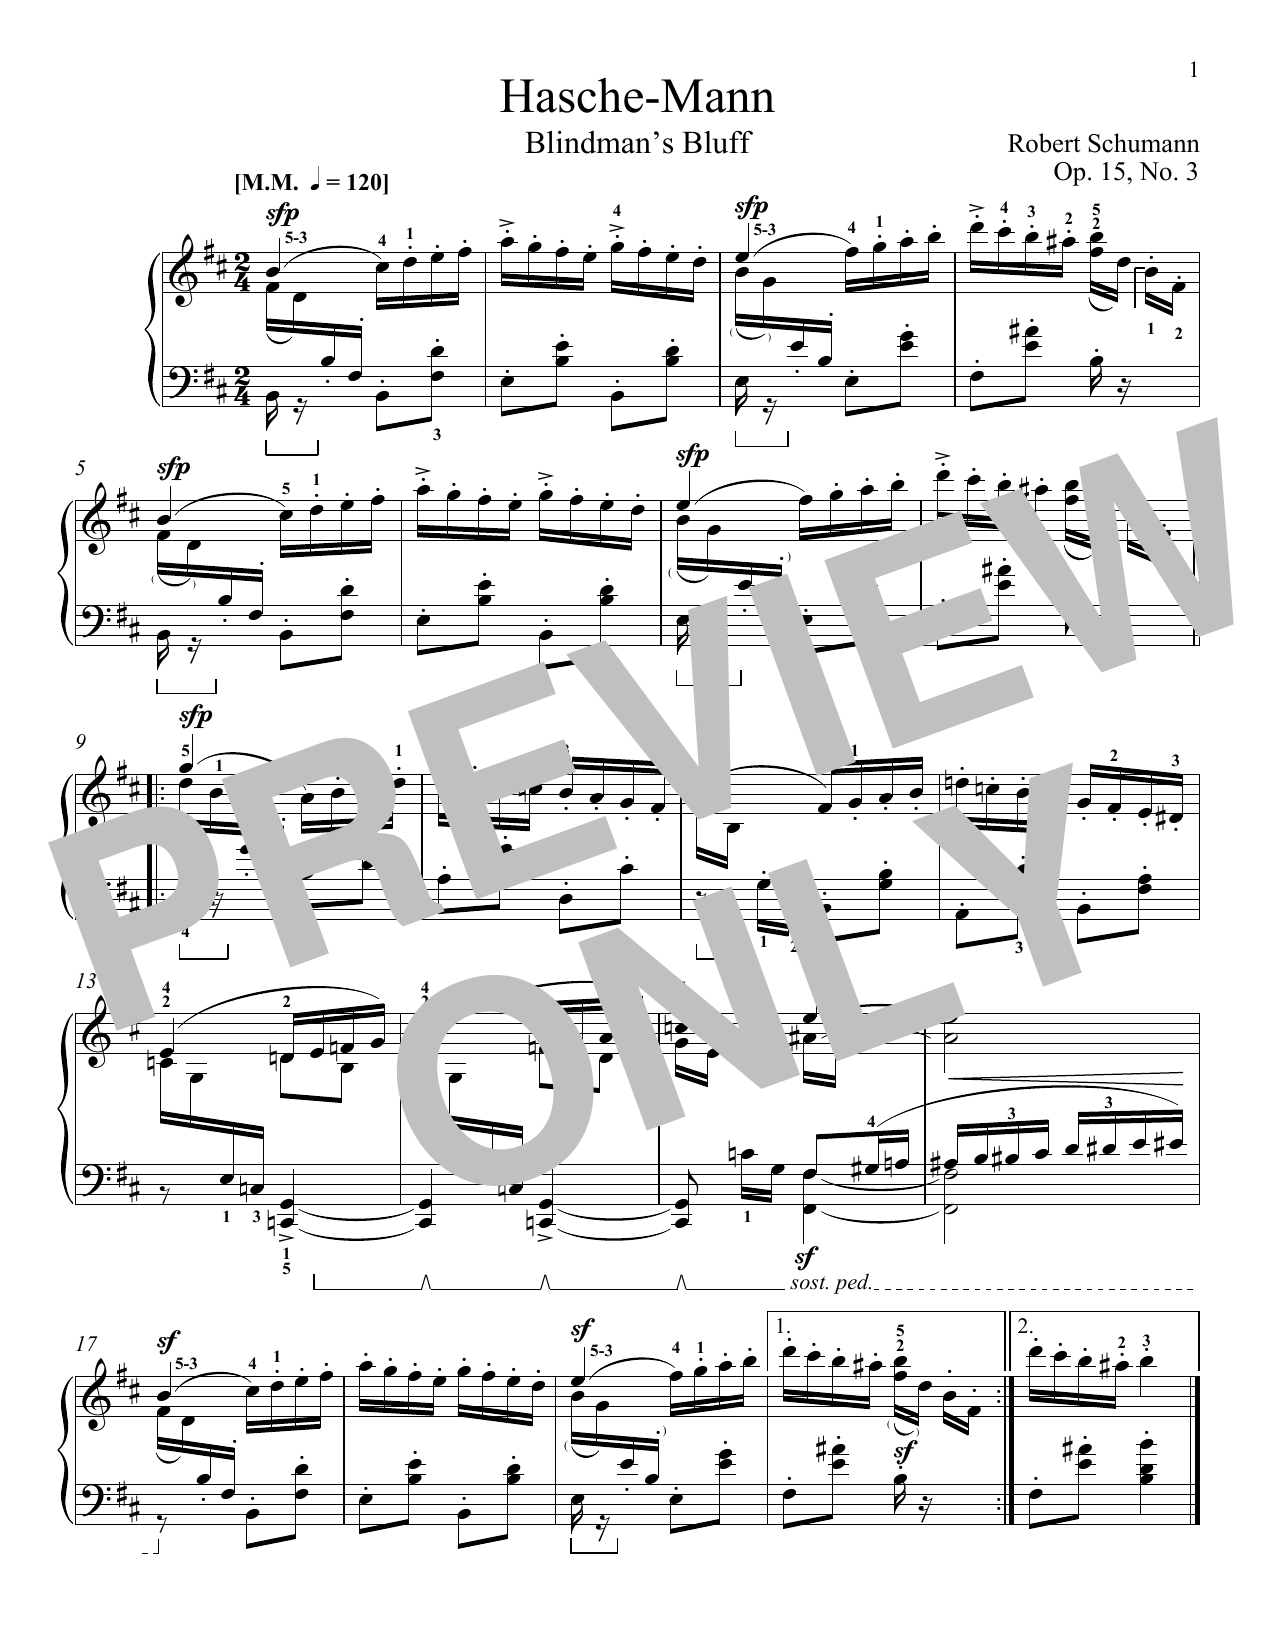 Download Robert Schumann Blindman's Bluff, Op. 15, No. 3 Sheet Music